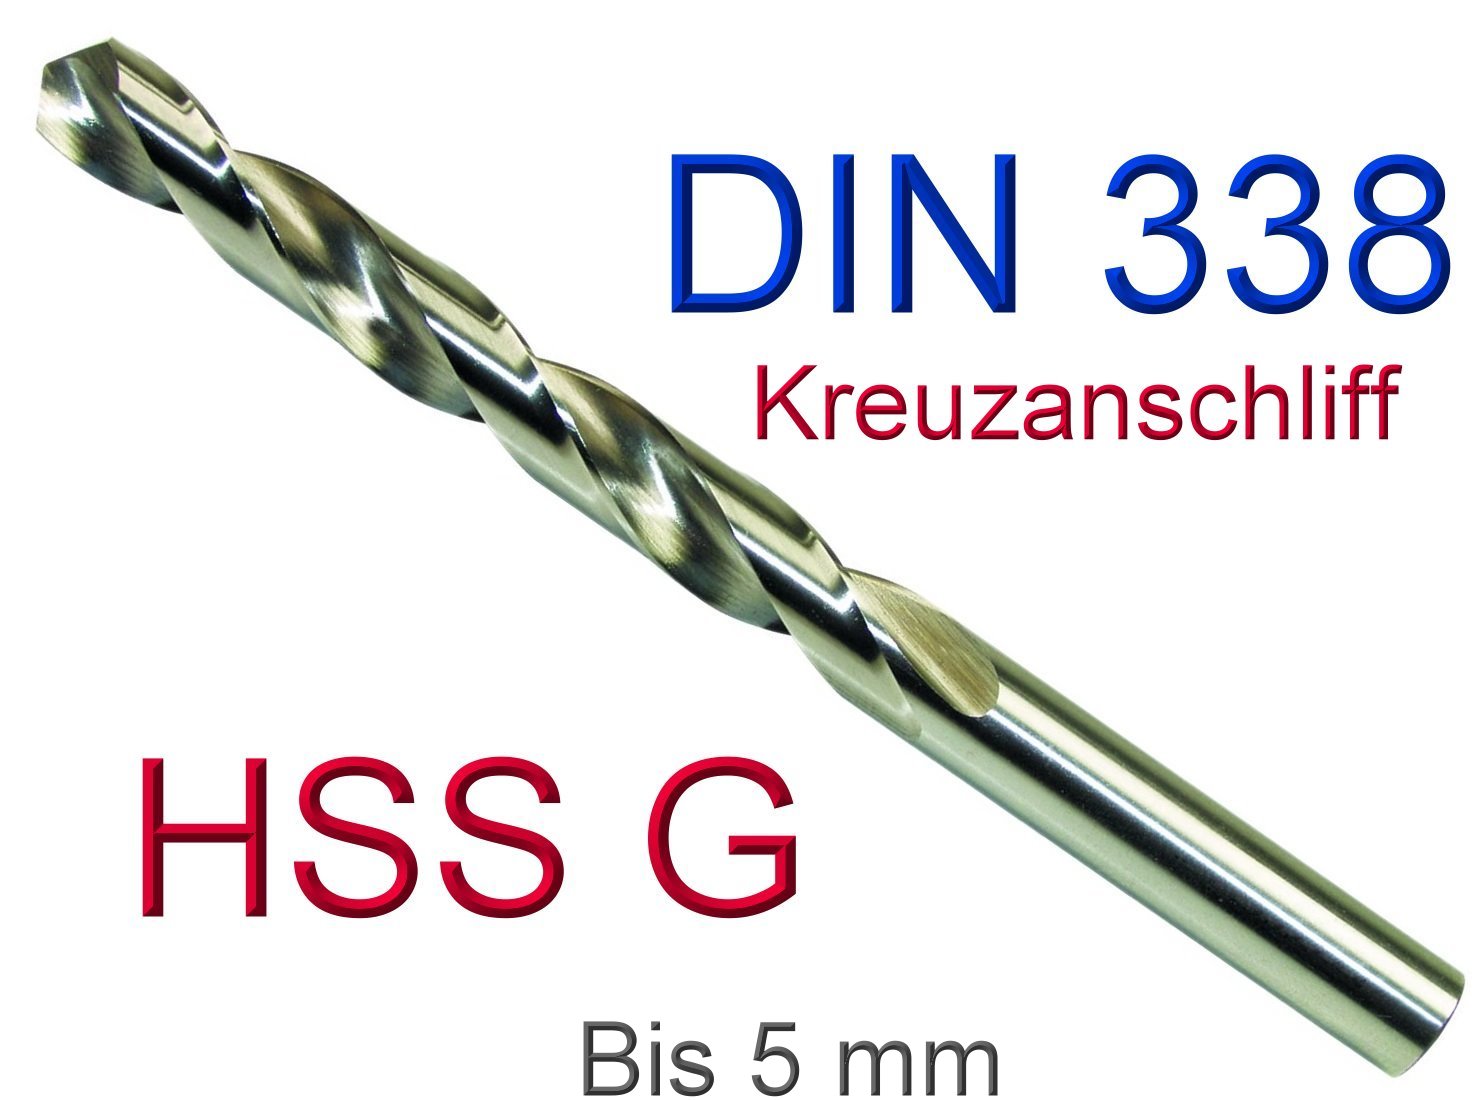 Bohrcraft Spiralbohrer DIN 338 HSS-G Split Point Typ U-TL 11250300150 10 Stück 1,5 mm in BC-QuadroPack Profi Plus 